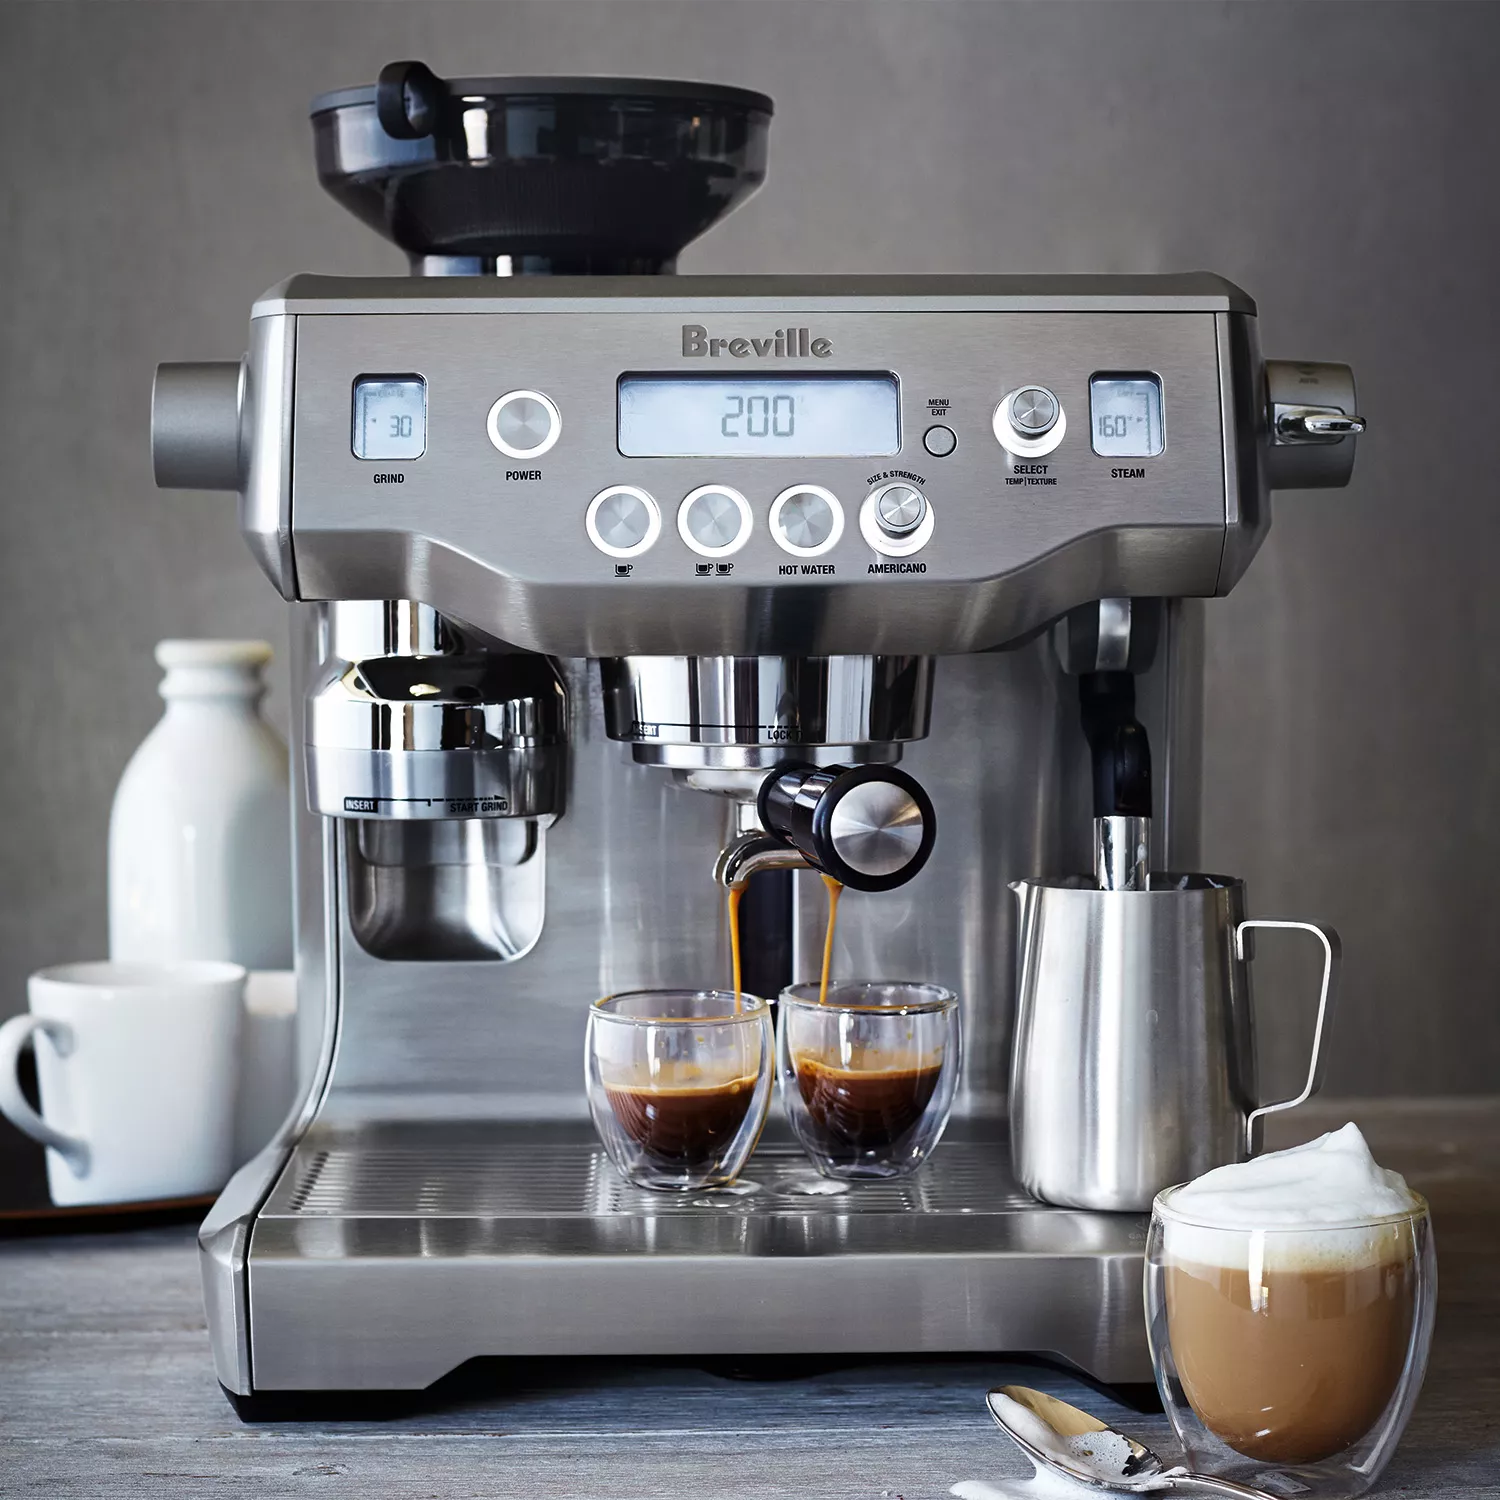 Breville's Nespresso Vertuo Coffee & Espresso Maker Is *Finally* Under $100